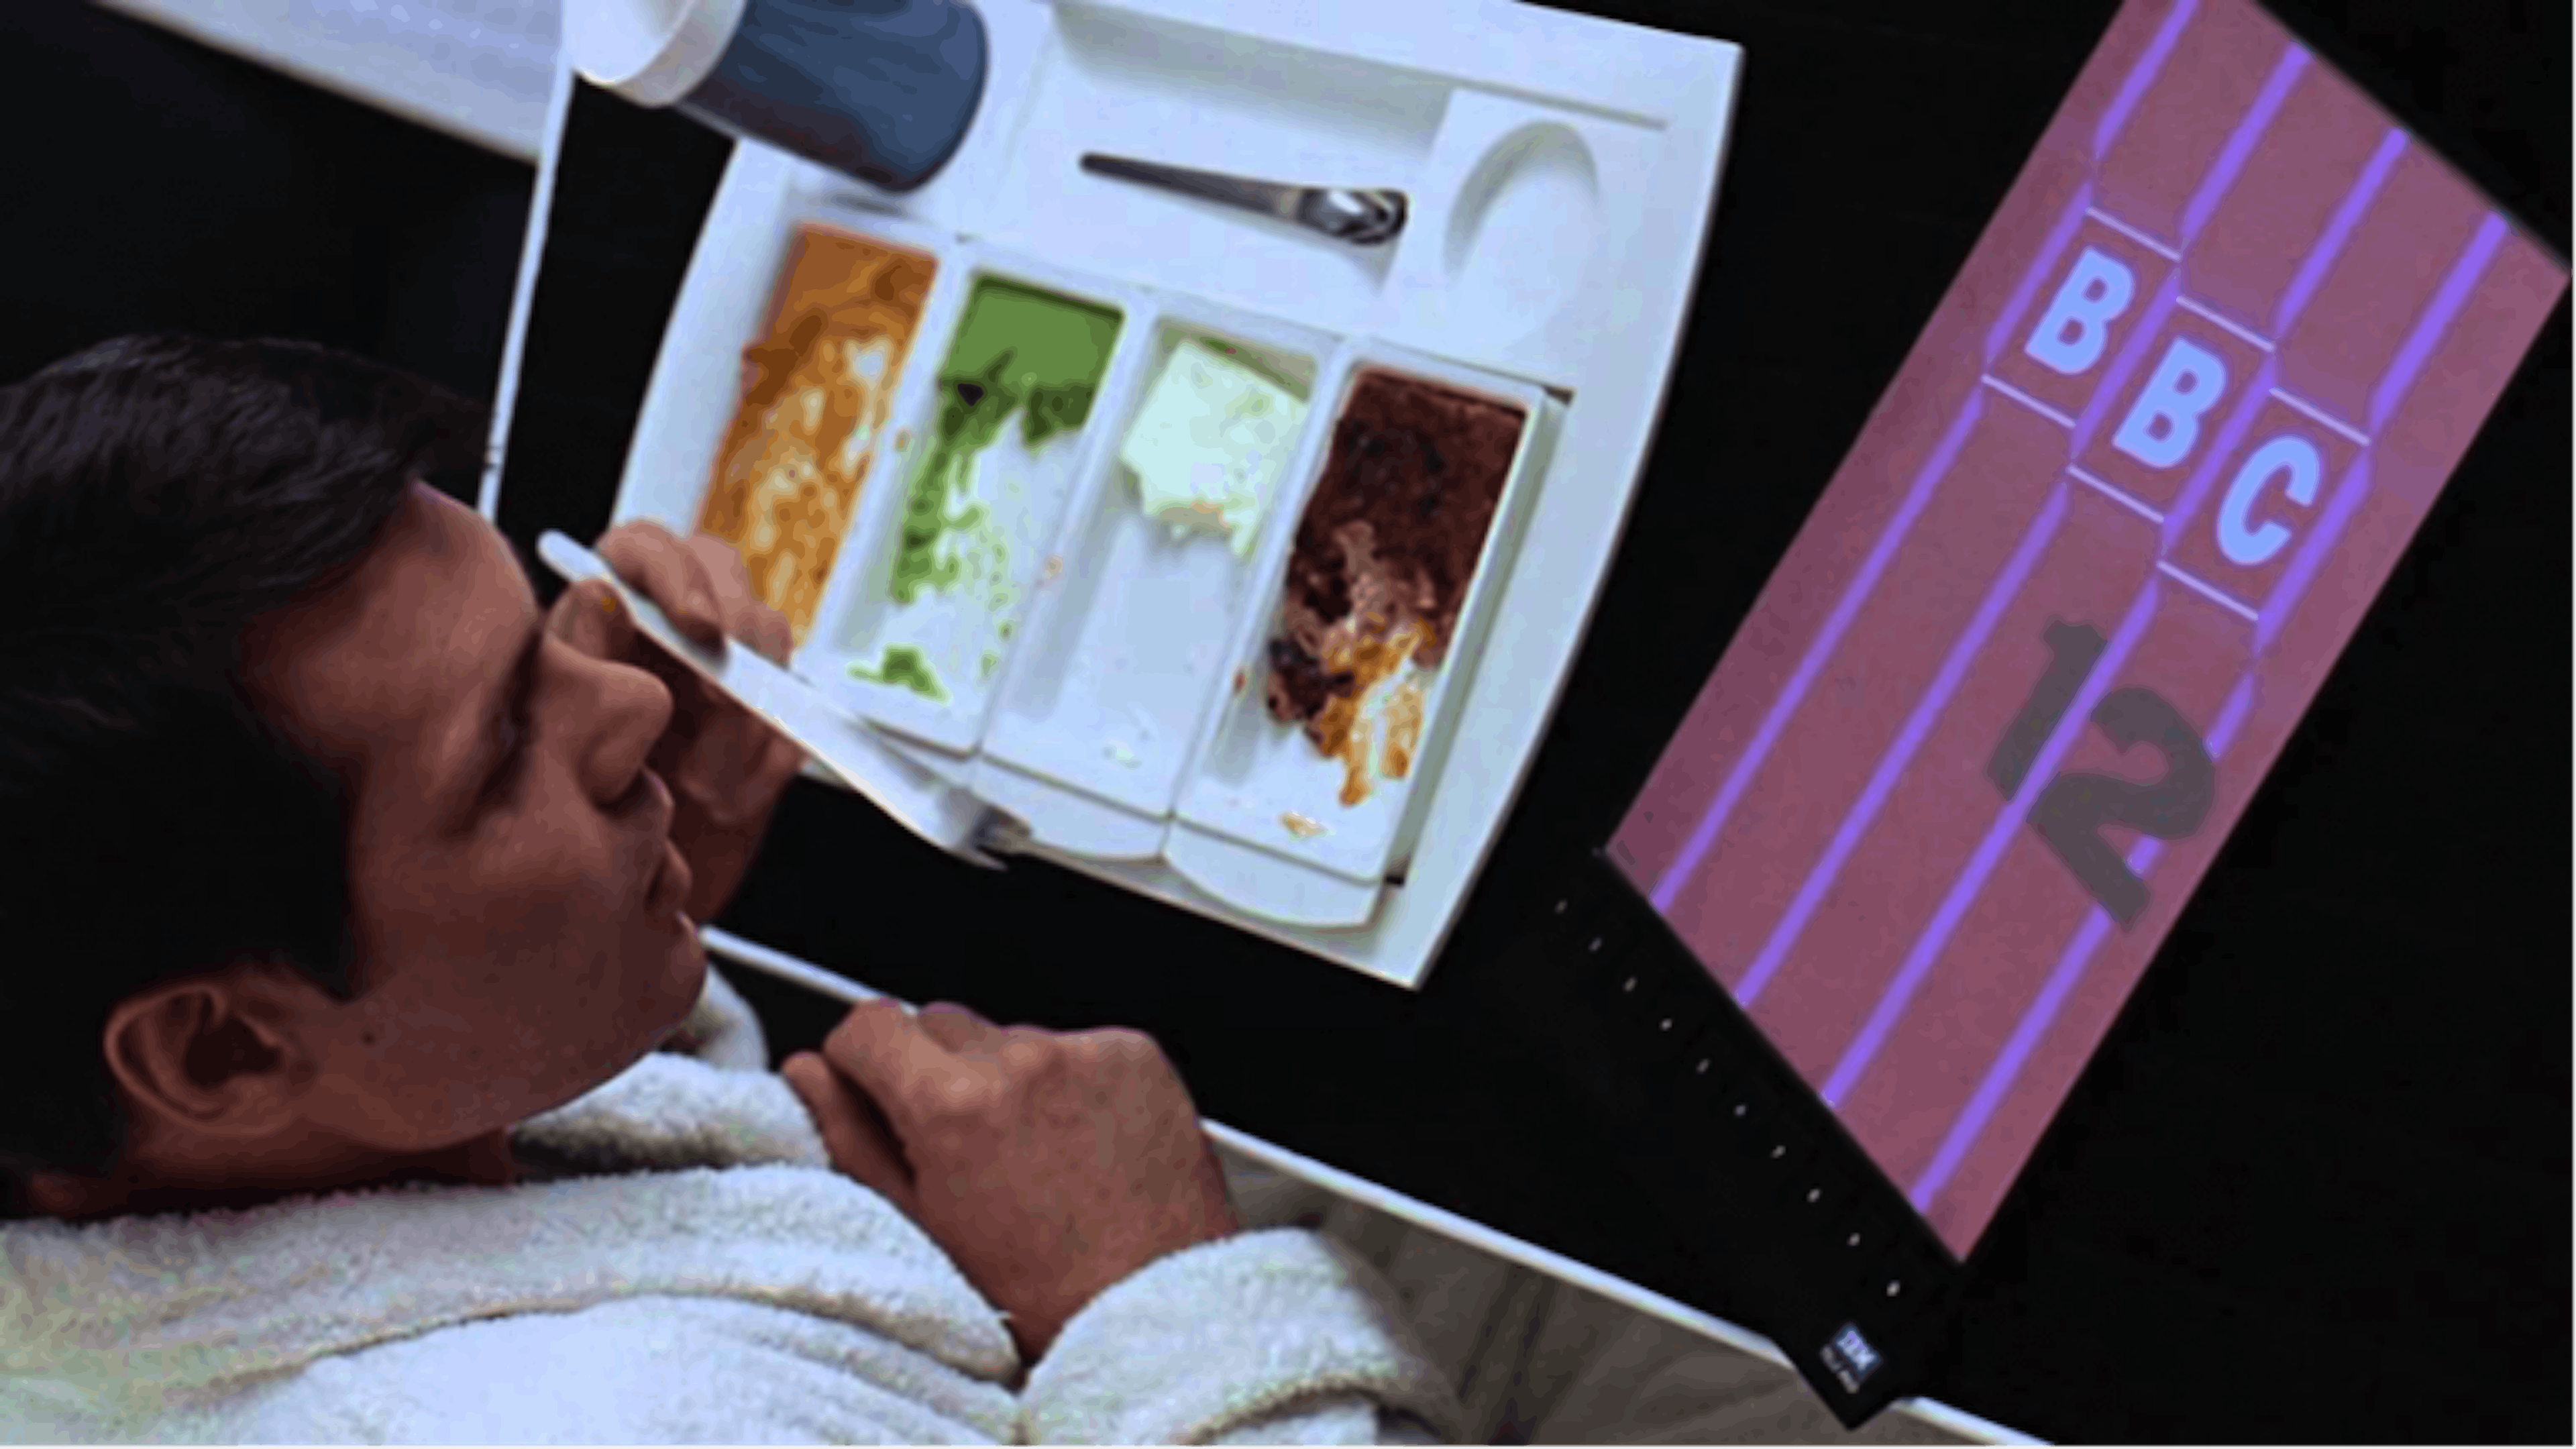 Tasses opalines Fireking vu dans le film 2001, l'Odyssée de l'espace de Stanley Kubrick